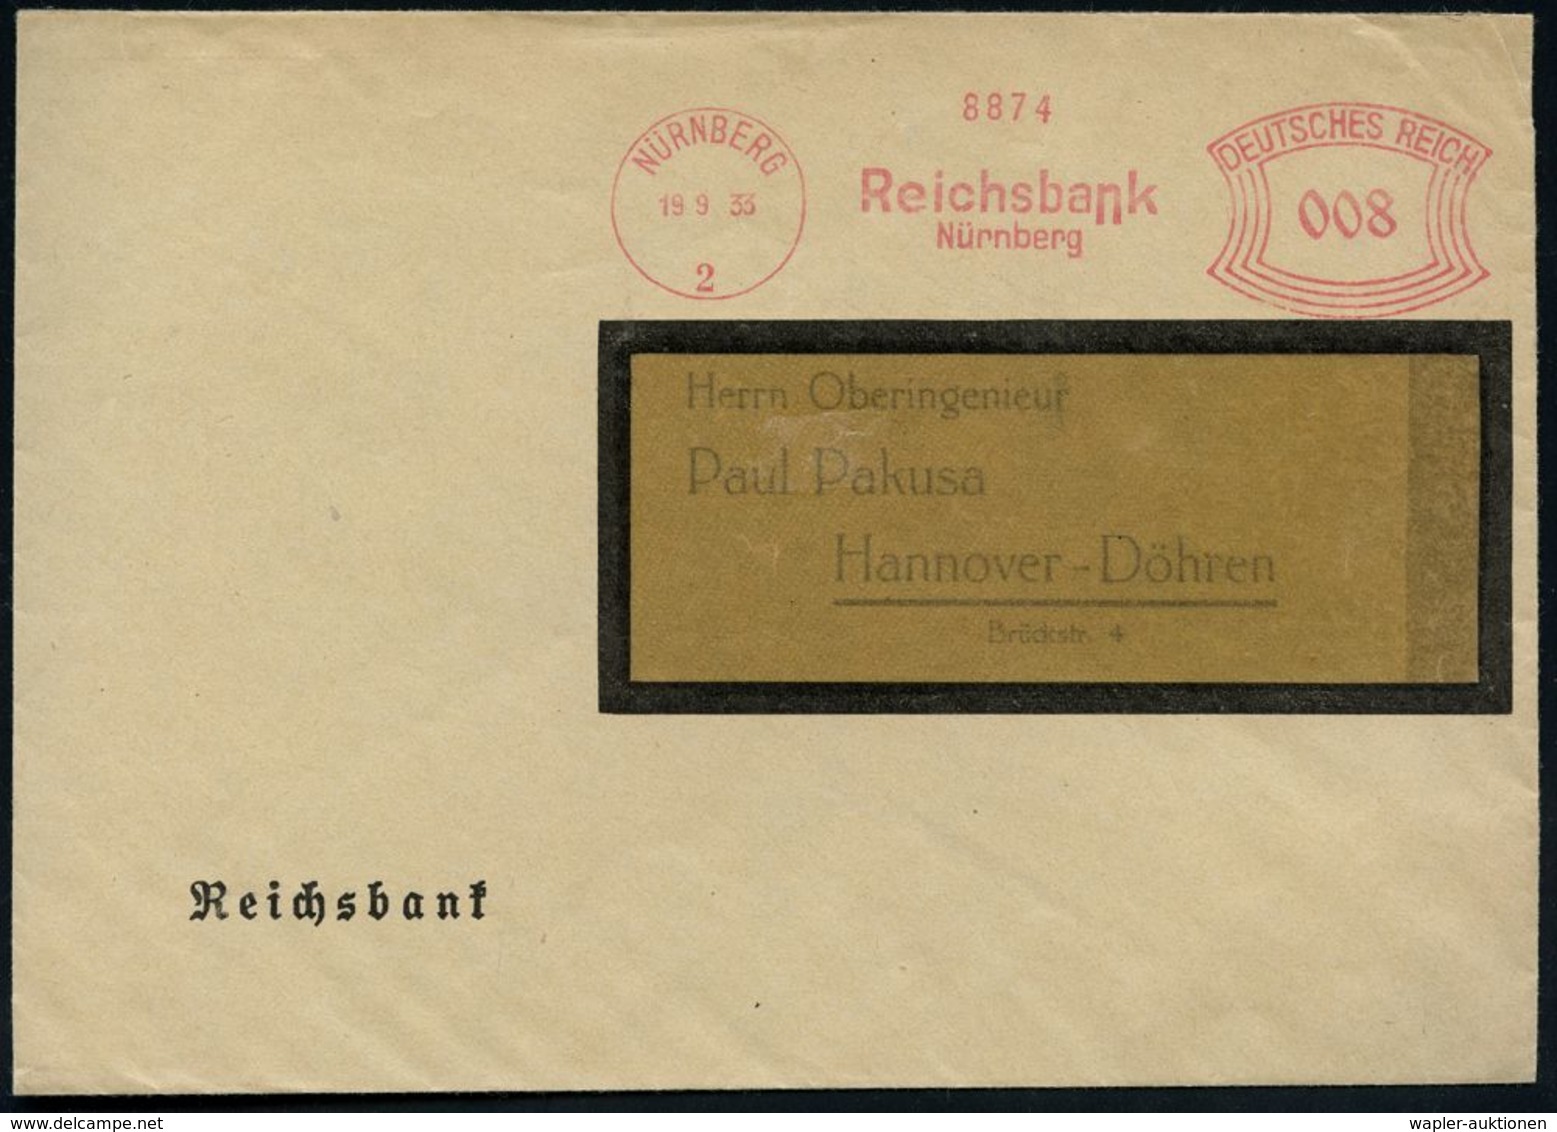 STAATSBANKEN / REICHSBANK / BUNDESBANK : NÜRNBERG/ 2/ Reichsbank 1933 (19.9.) AFS Auf Dienst-Bf.: Reichsbank (Dü.E-1CAh) - Unclassified